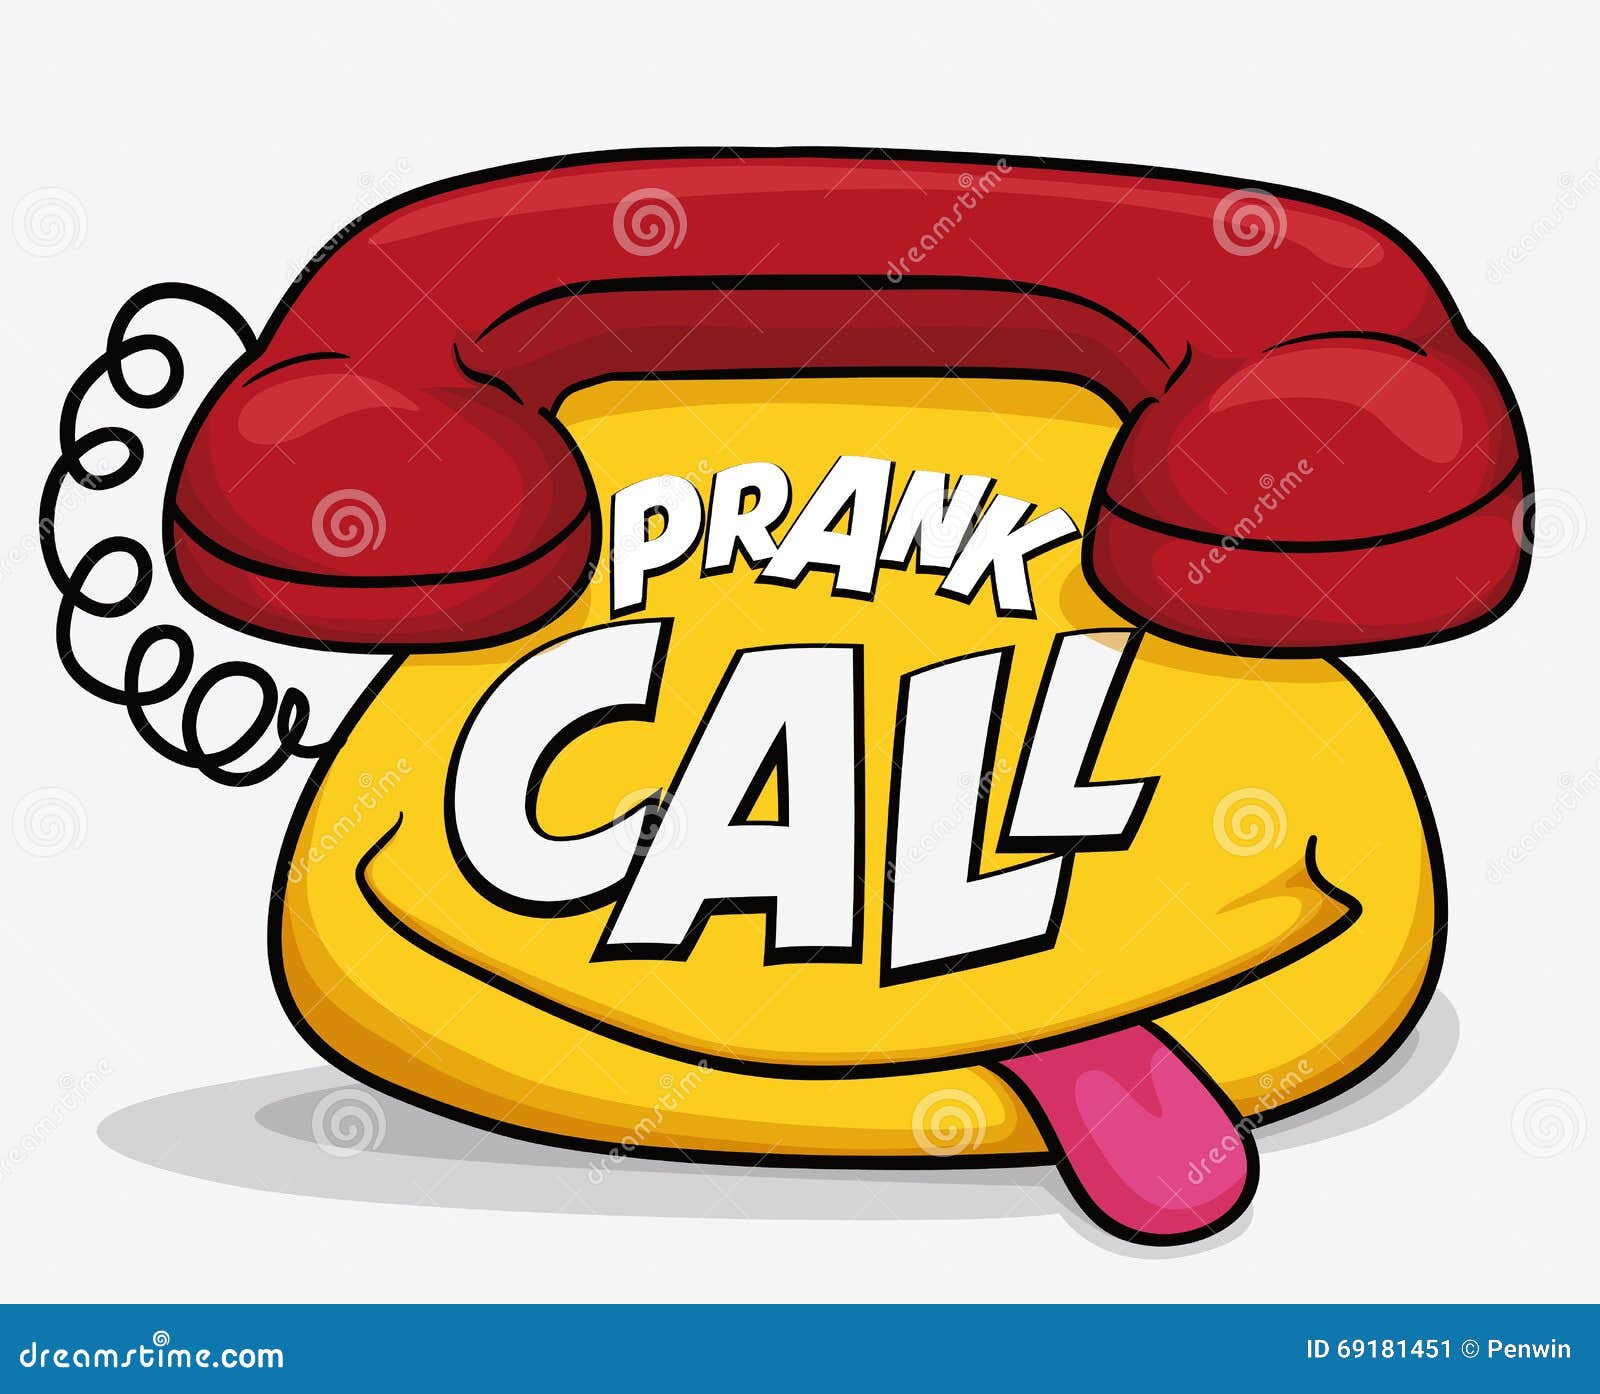 Prank Calls Stock Illustrations – 9 Prank Calls Stock Illustrations,  Vectors & Clipart - Dreamstime